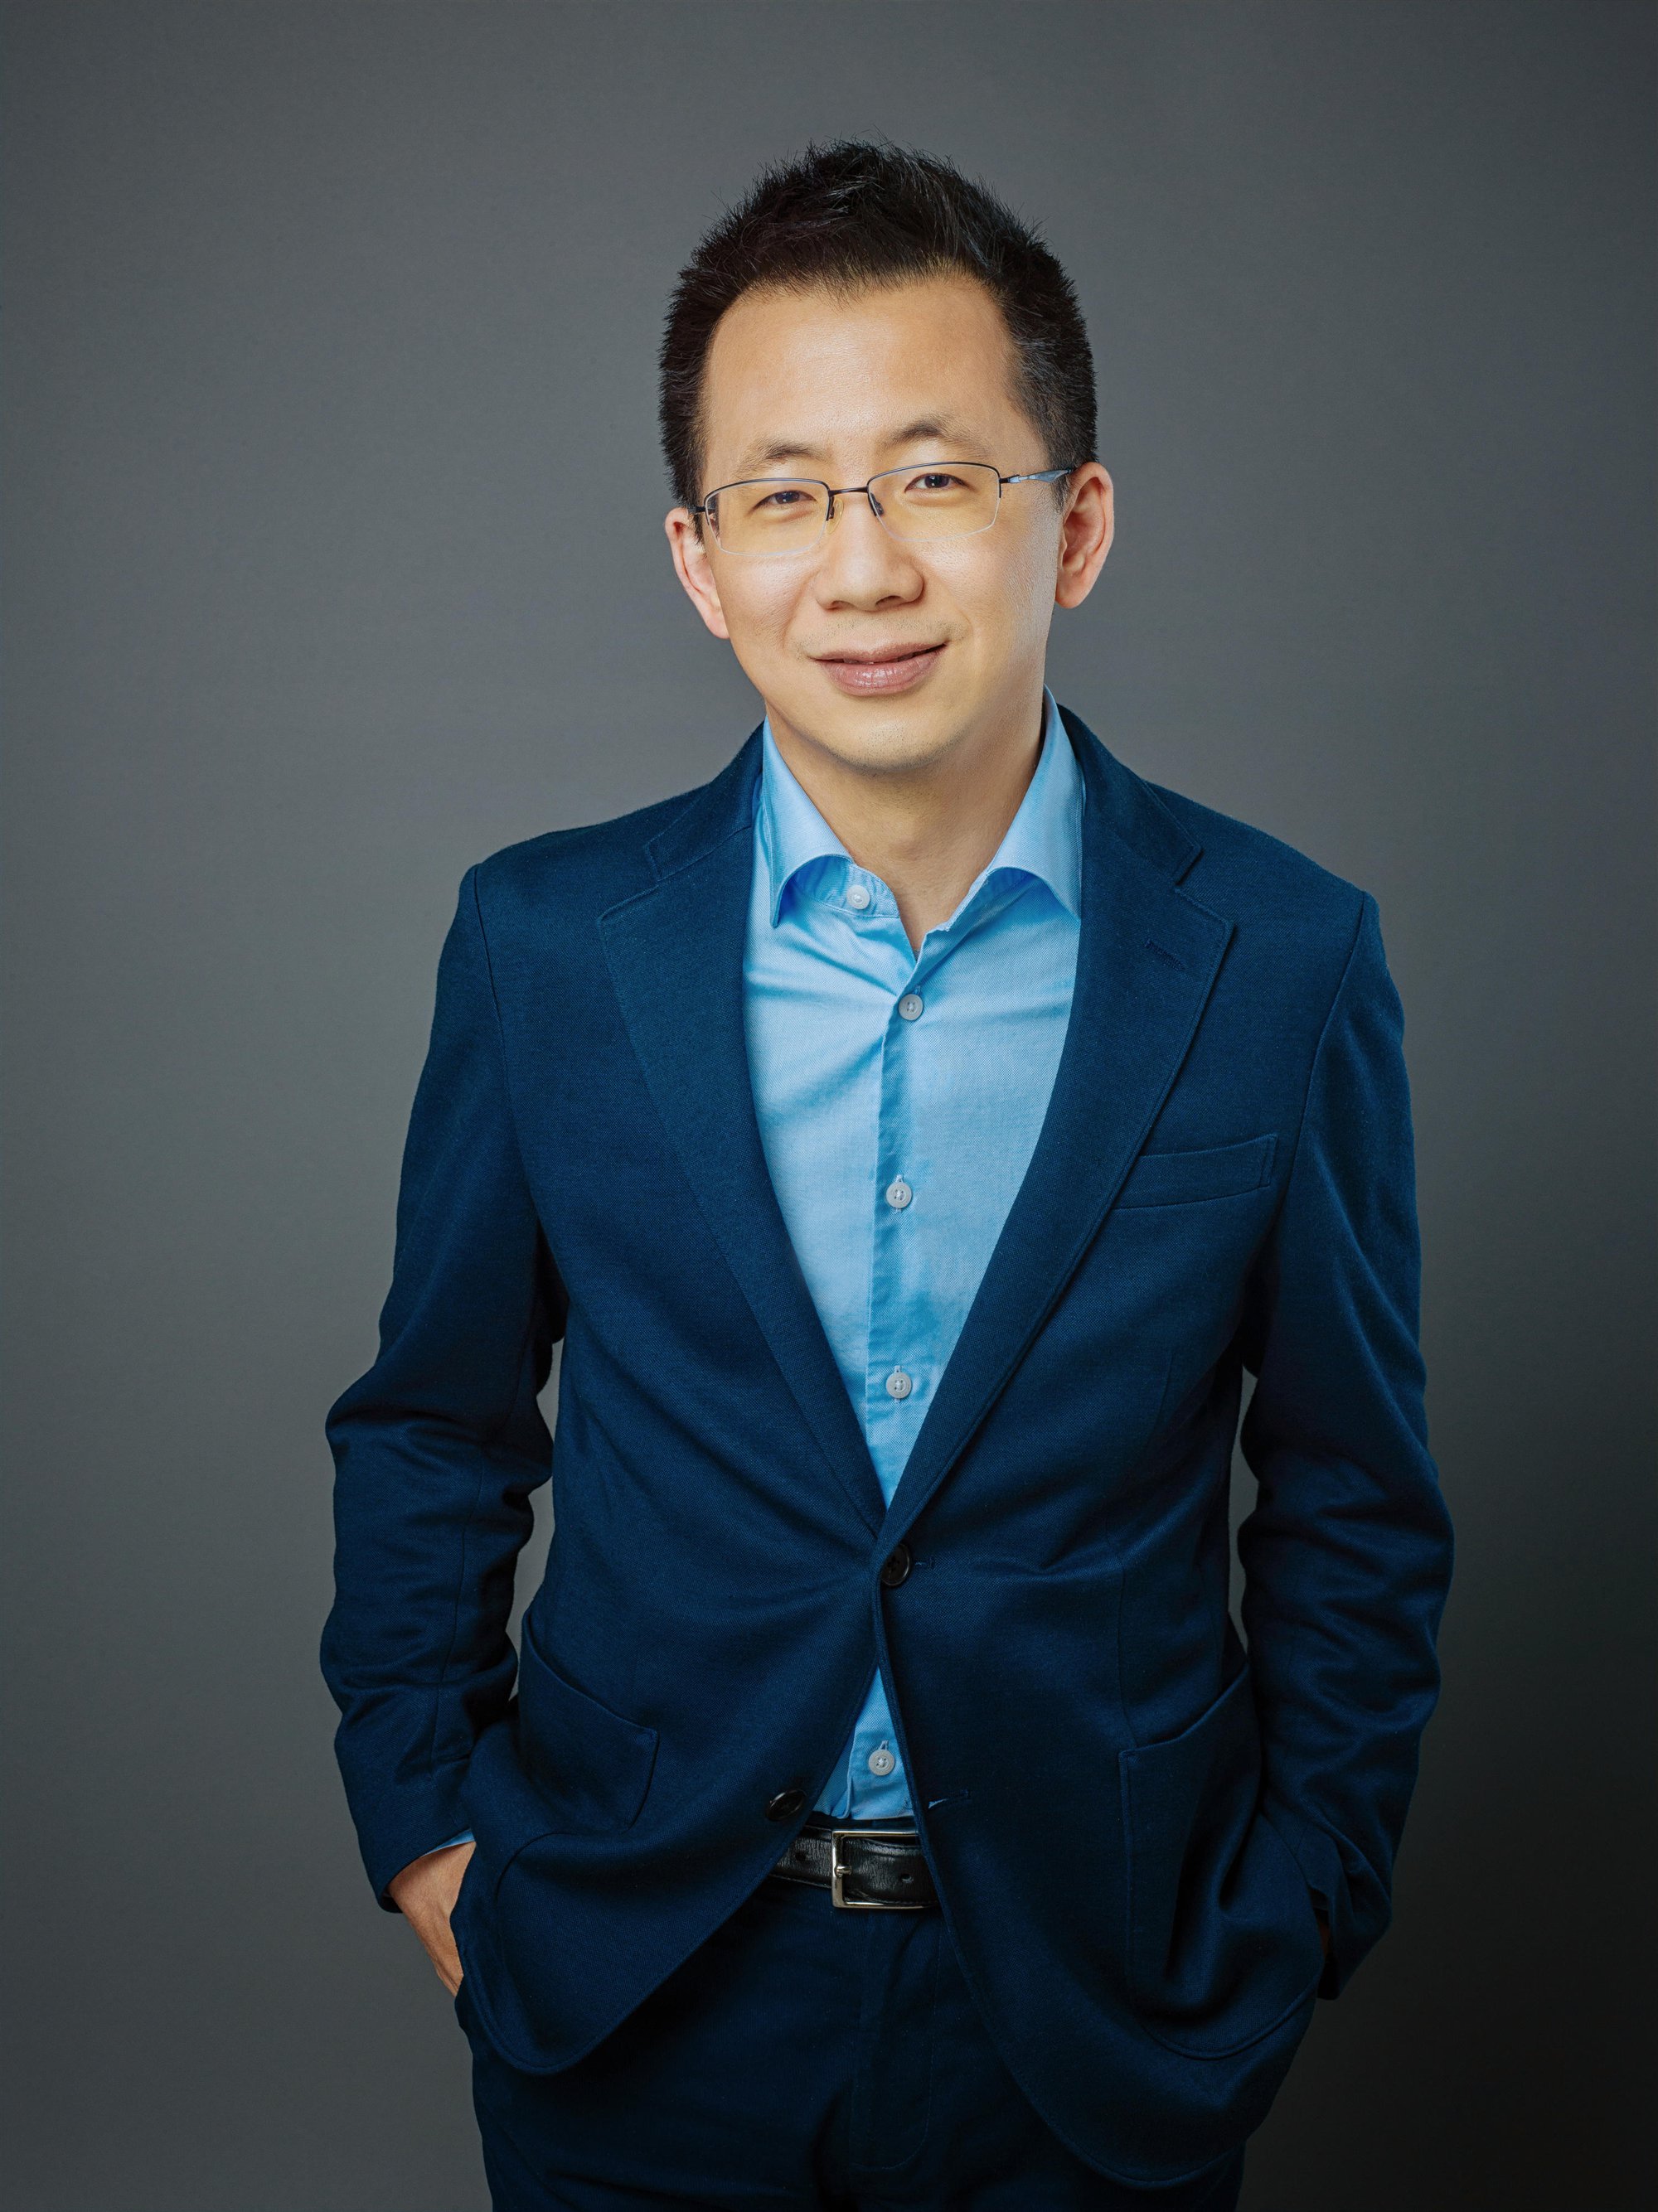 Zhang Yiming (Trương Nhất Minh) đã gây dựng được khối tài sản trị giá 44,5 tỷ USD kể từ khi đồng sáng lập ByteDance, gã khổng lồ công nghệ Trung Quốc đứng sau TikTok. Ảnh: @AFP.